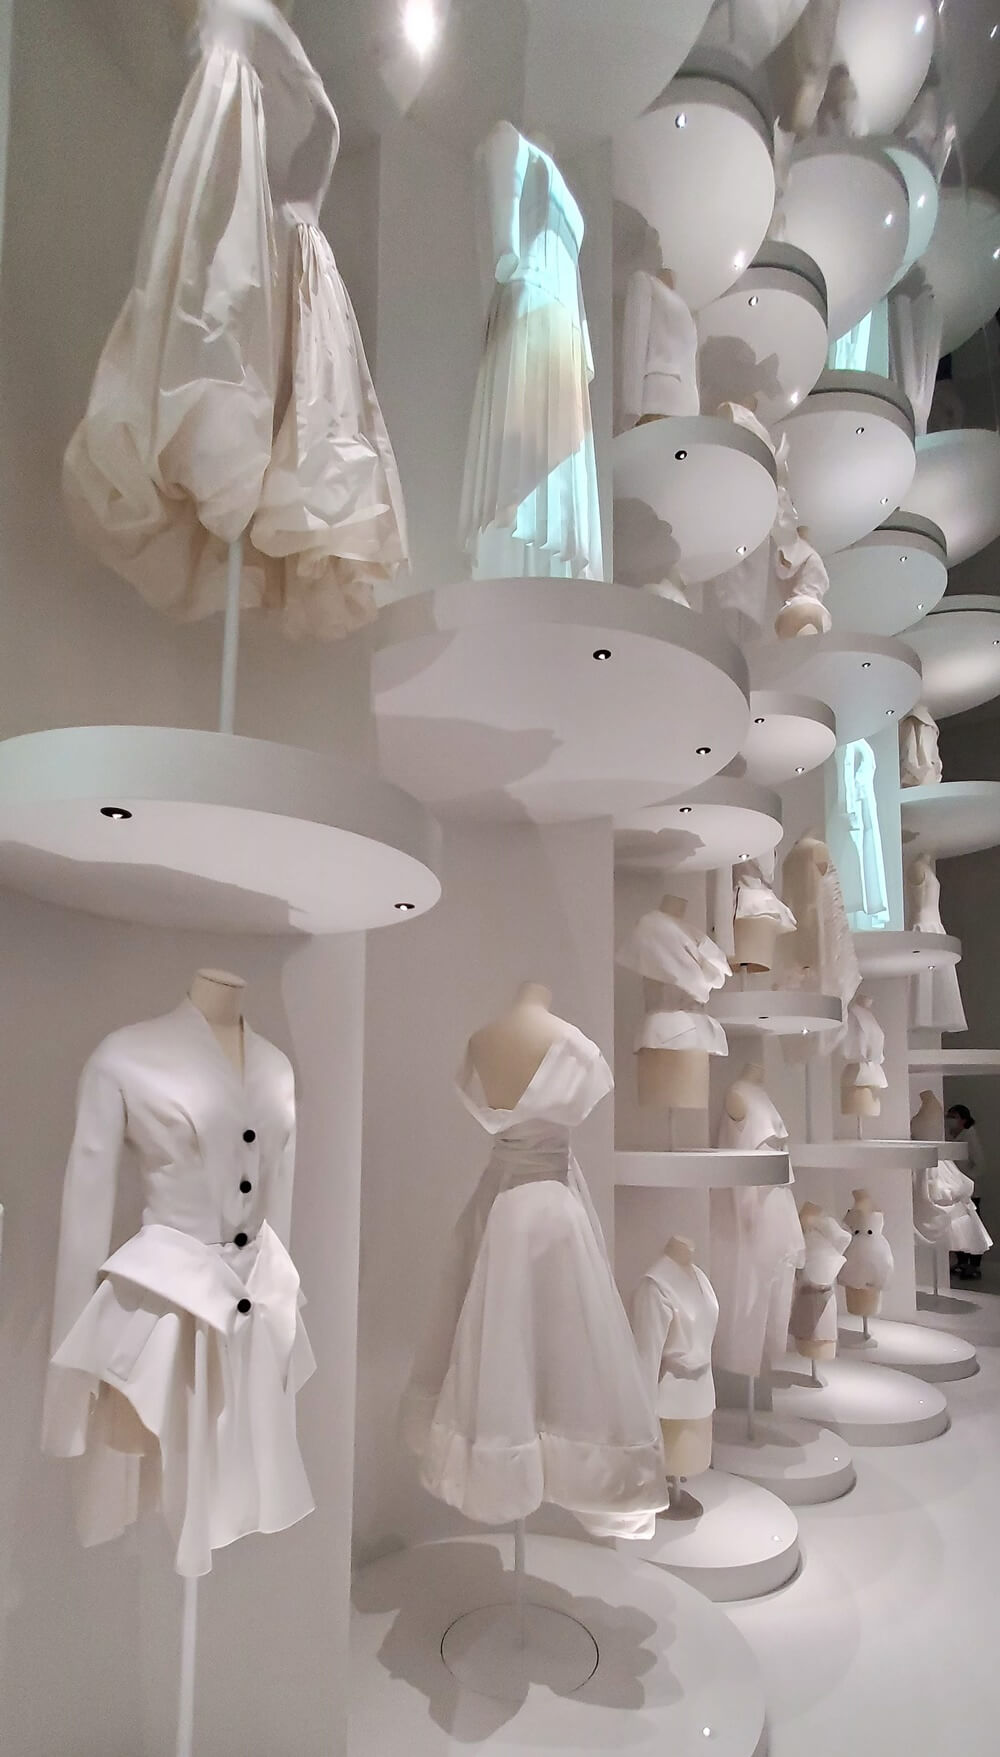 クリスチャン・ディオール、 夢のクチュリエ　Christian Dior: Designer of Dreams - Expositions